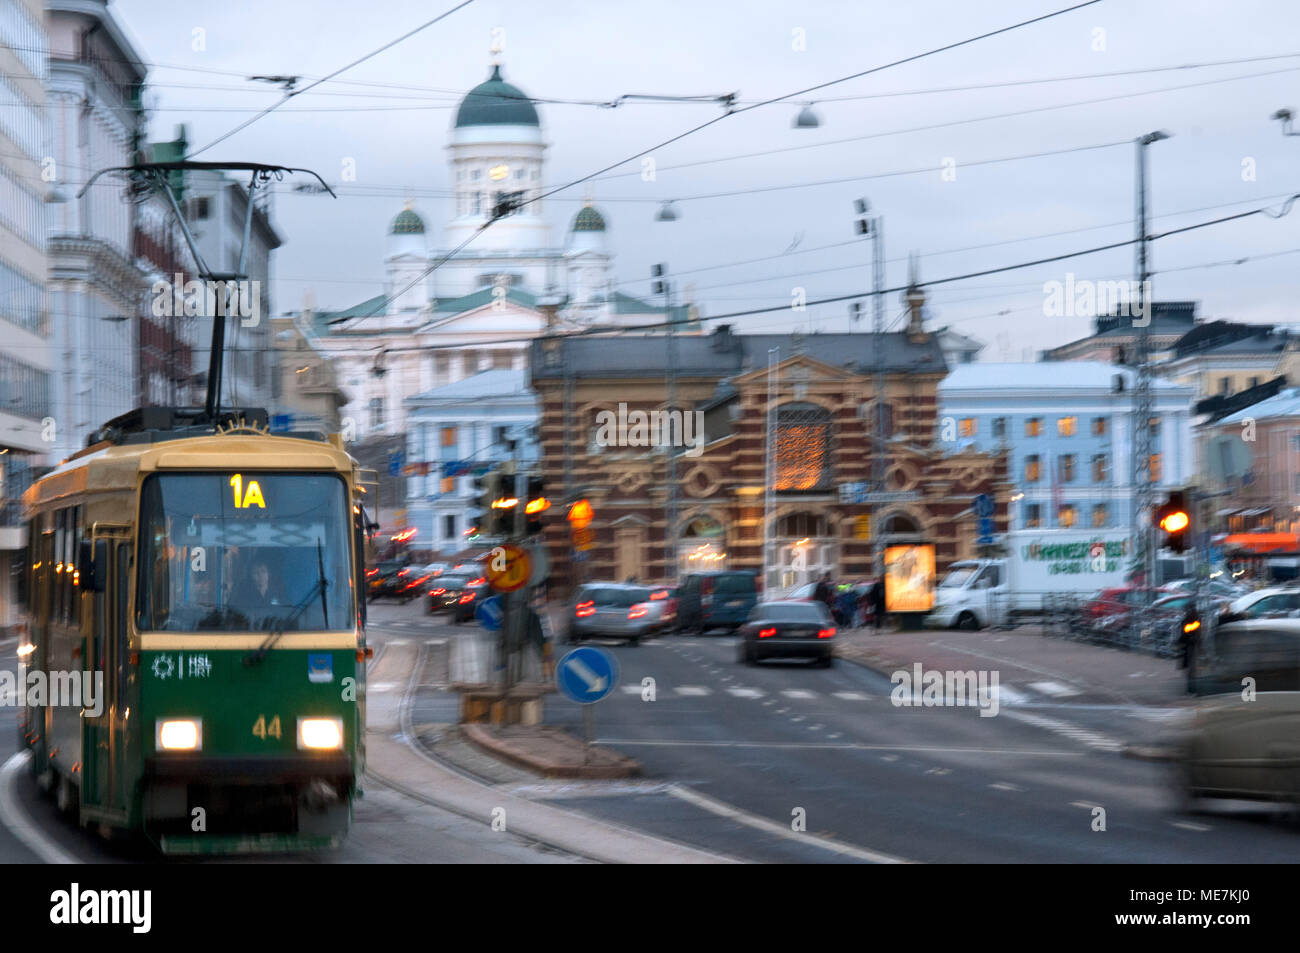 Vista generale della città di Helsinki con il tram, la quota di mercato e la Senaatintori Cattedrale Luterana dall'Eteläranta street. Foto Stock